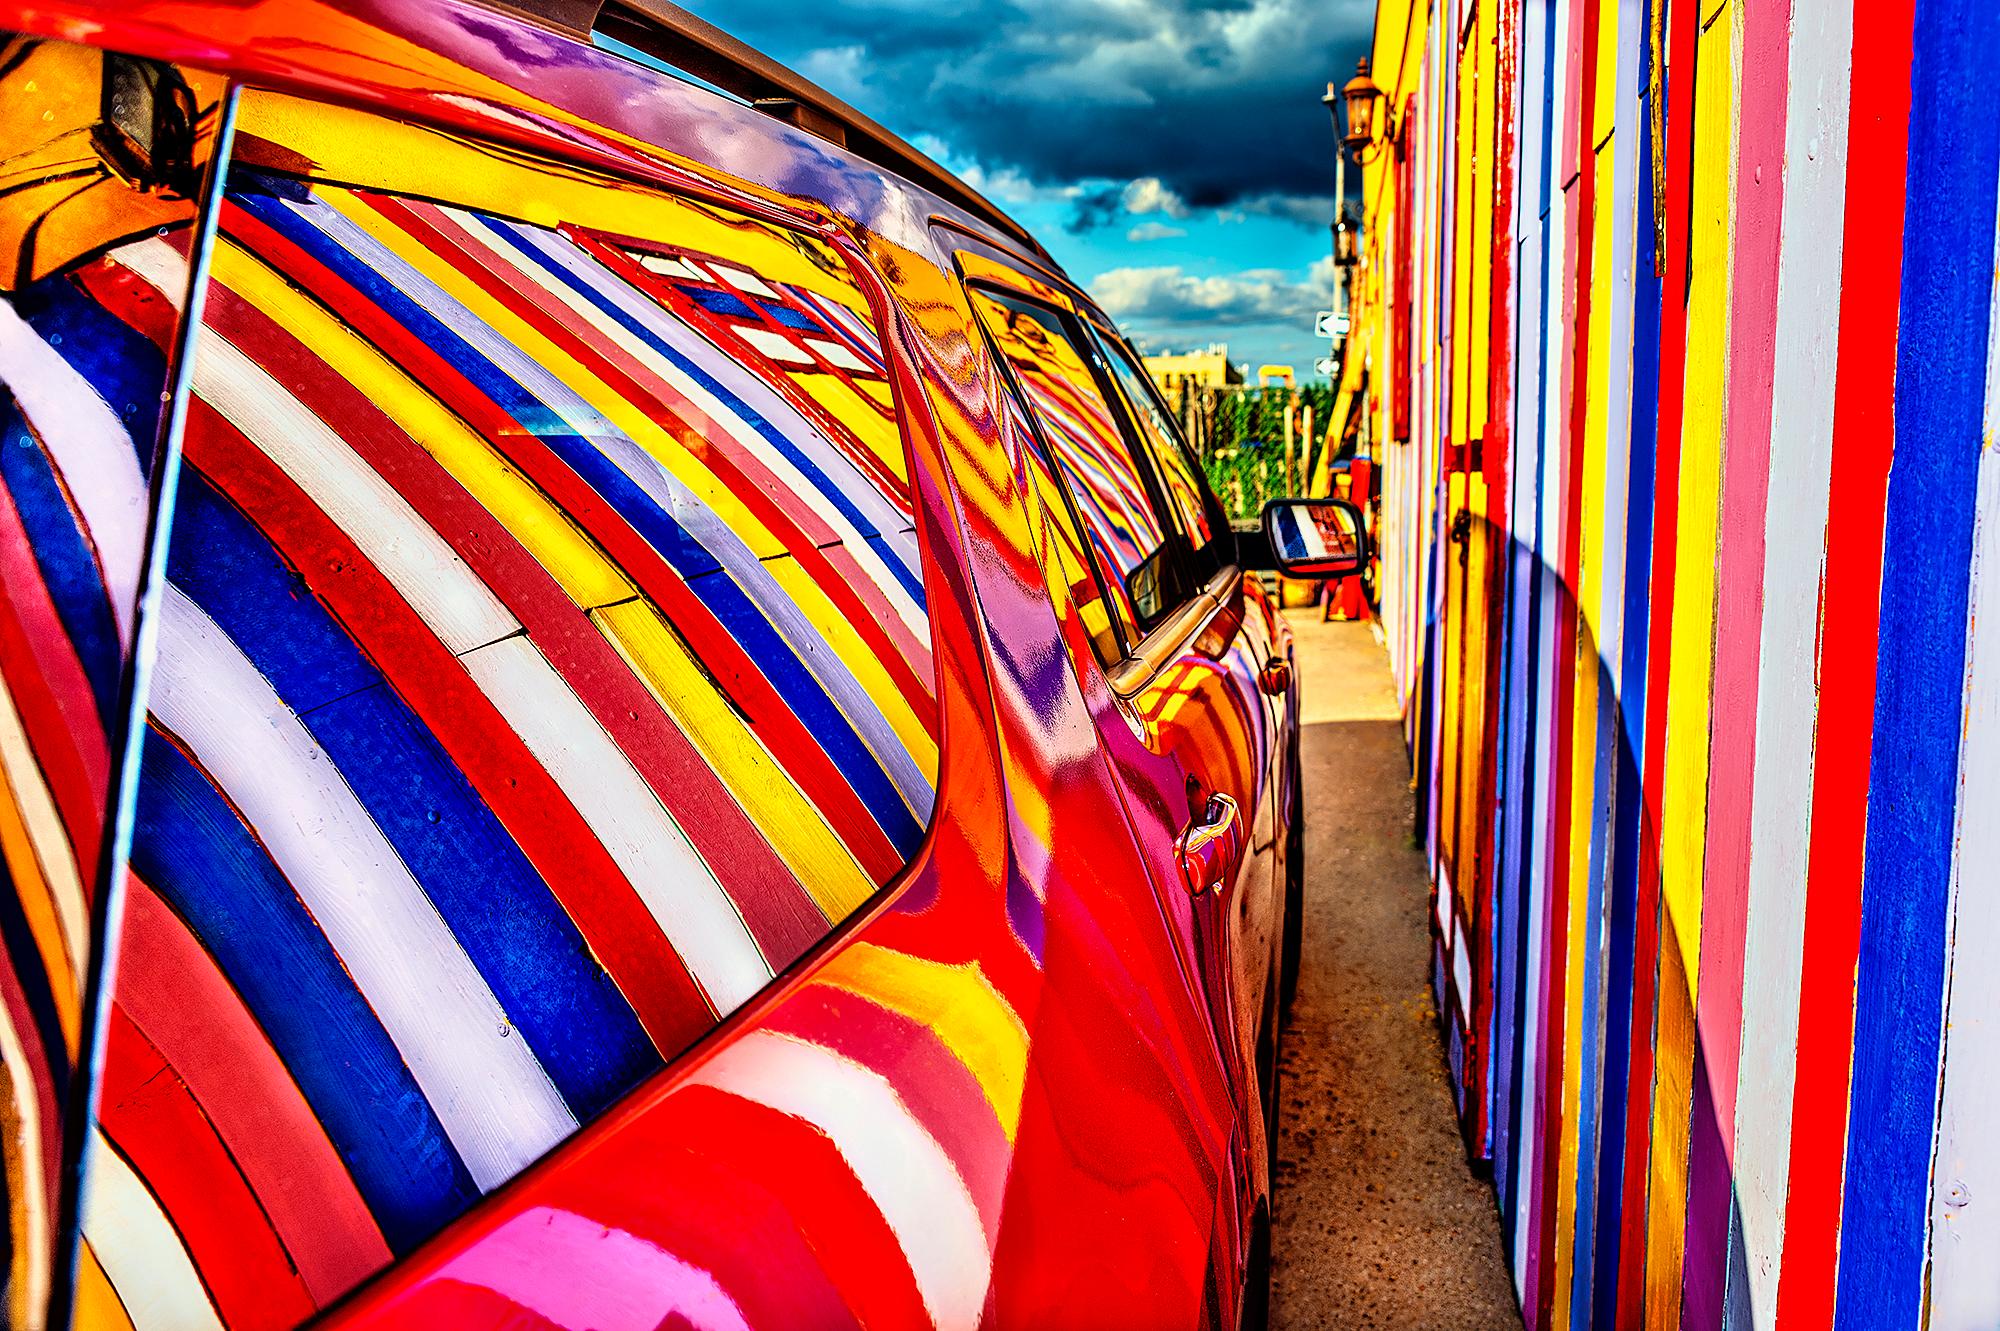 Mitchell Funk Color Photograph – Regenbogen der Farbreflexion im Autofenster – (Abstrakte Fotografie)